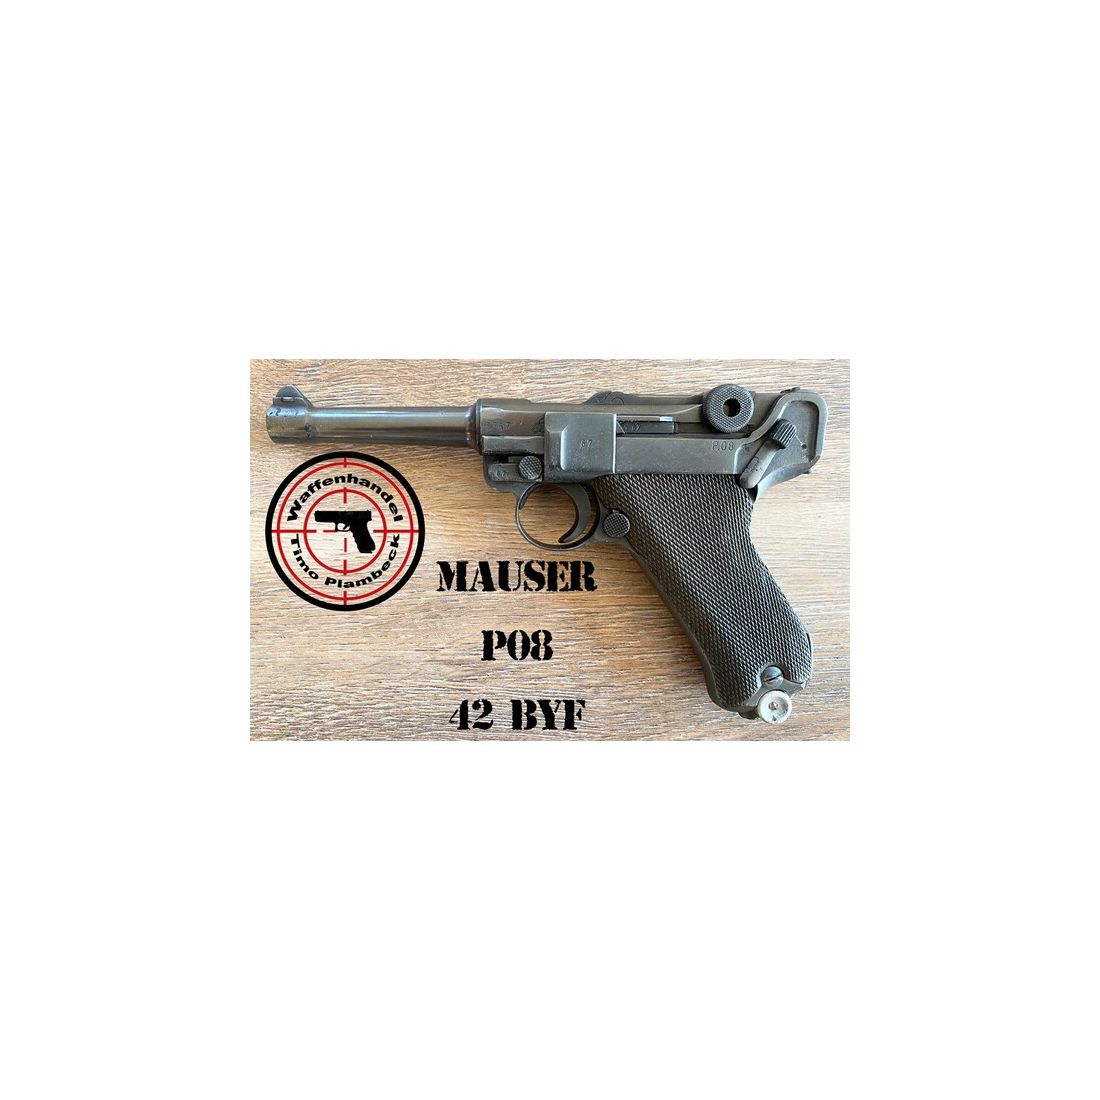 halbautom. Pistole Mauser P08 mit dem Code "42 - byf" im Kaliber 9mmLuger mit gültigen Beschuss